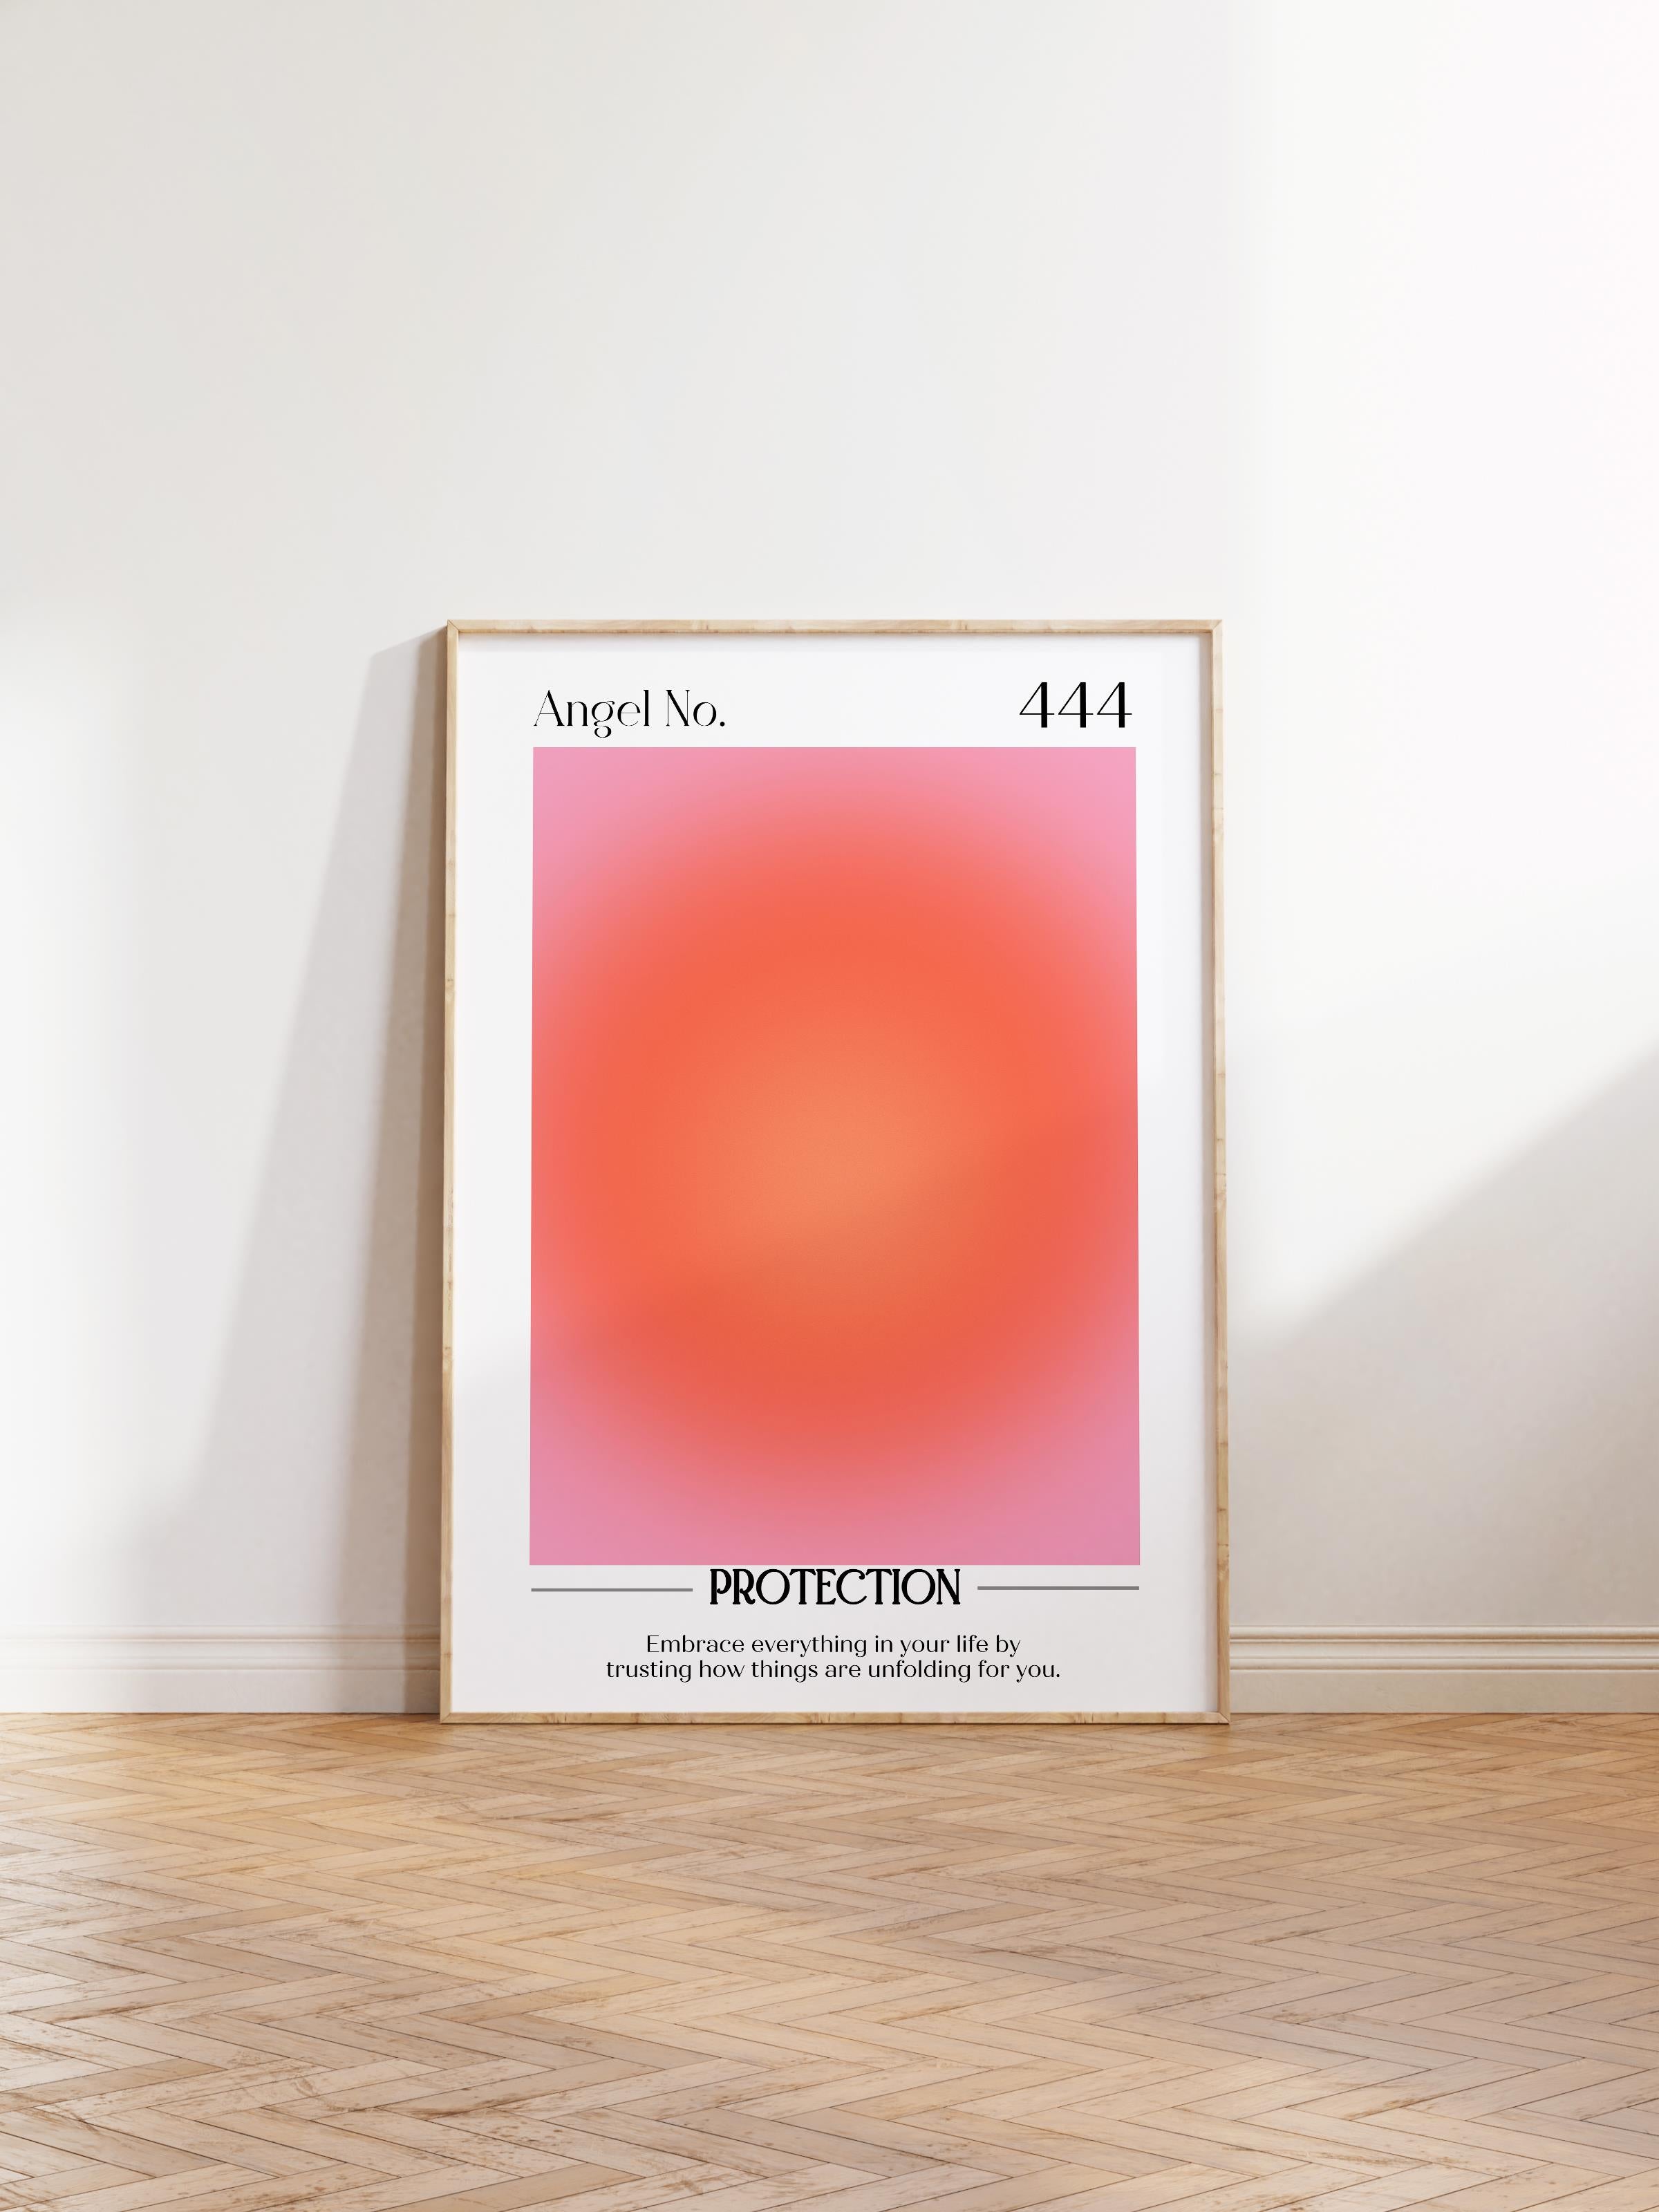 Çerçevesiz Poster, Aura Serisi NO:39 - 444 - Protection, Melek Numaraları, Renkli Poster